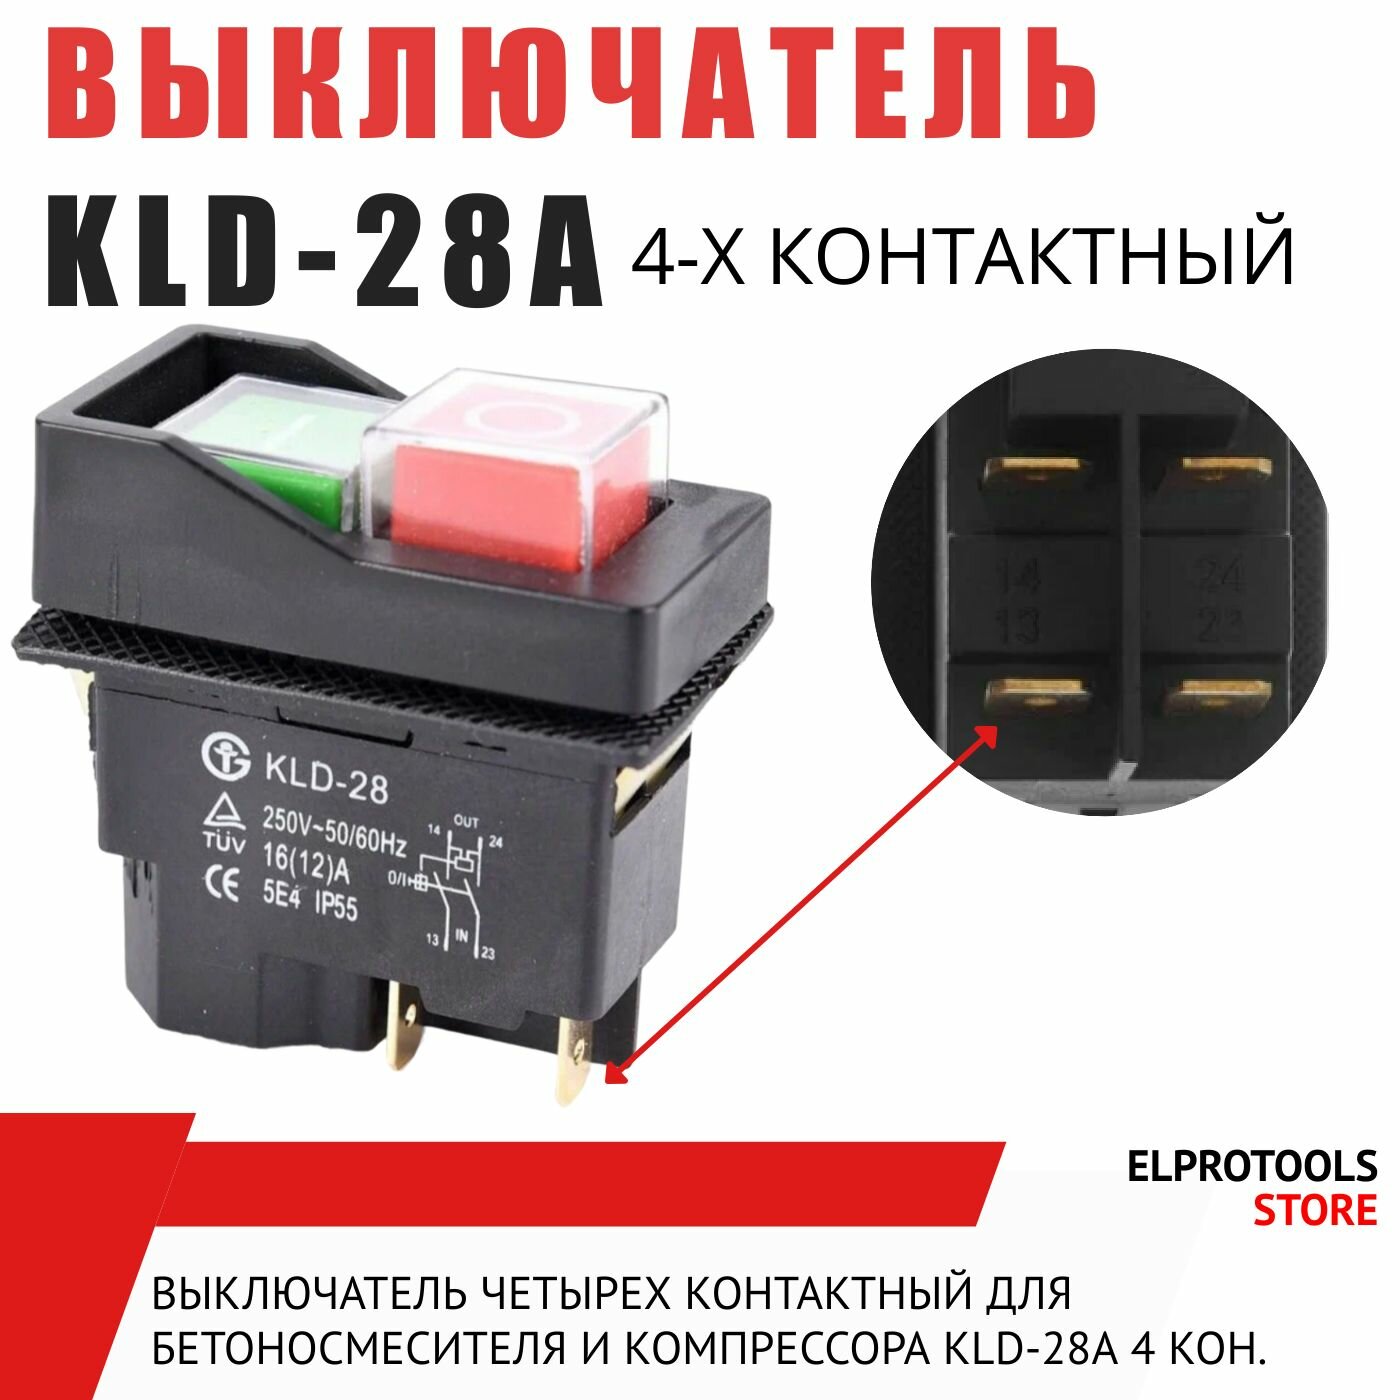 101105 Выключатель четырех контактный для бетоносмесителя и компрессора старого образца KLD-28A 4 кон.